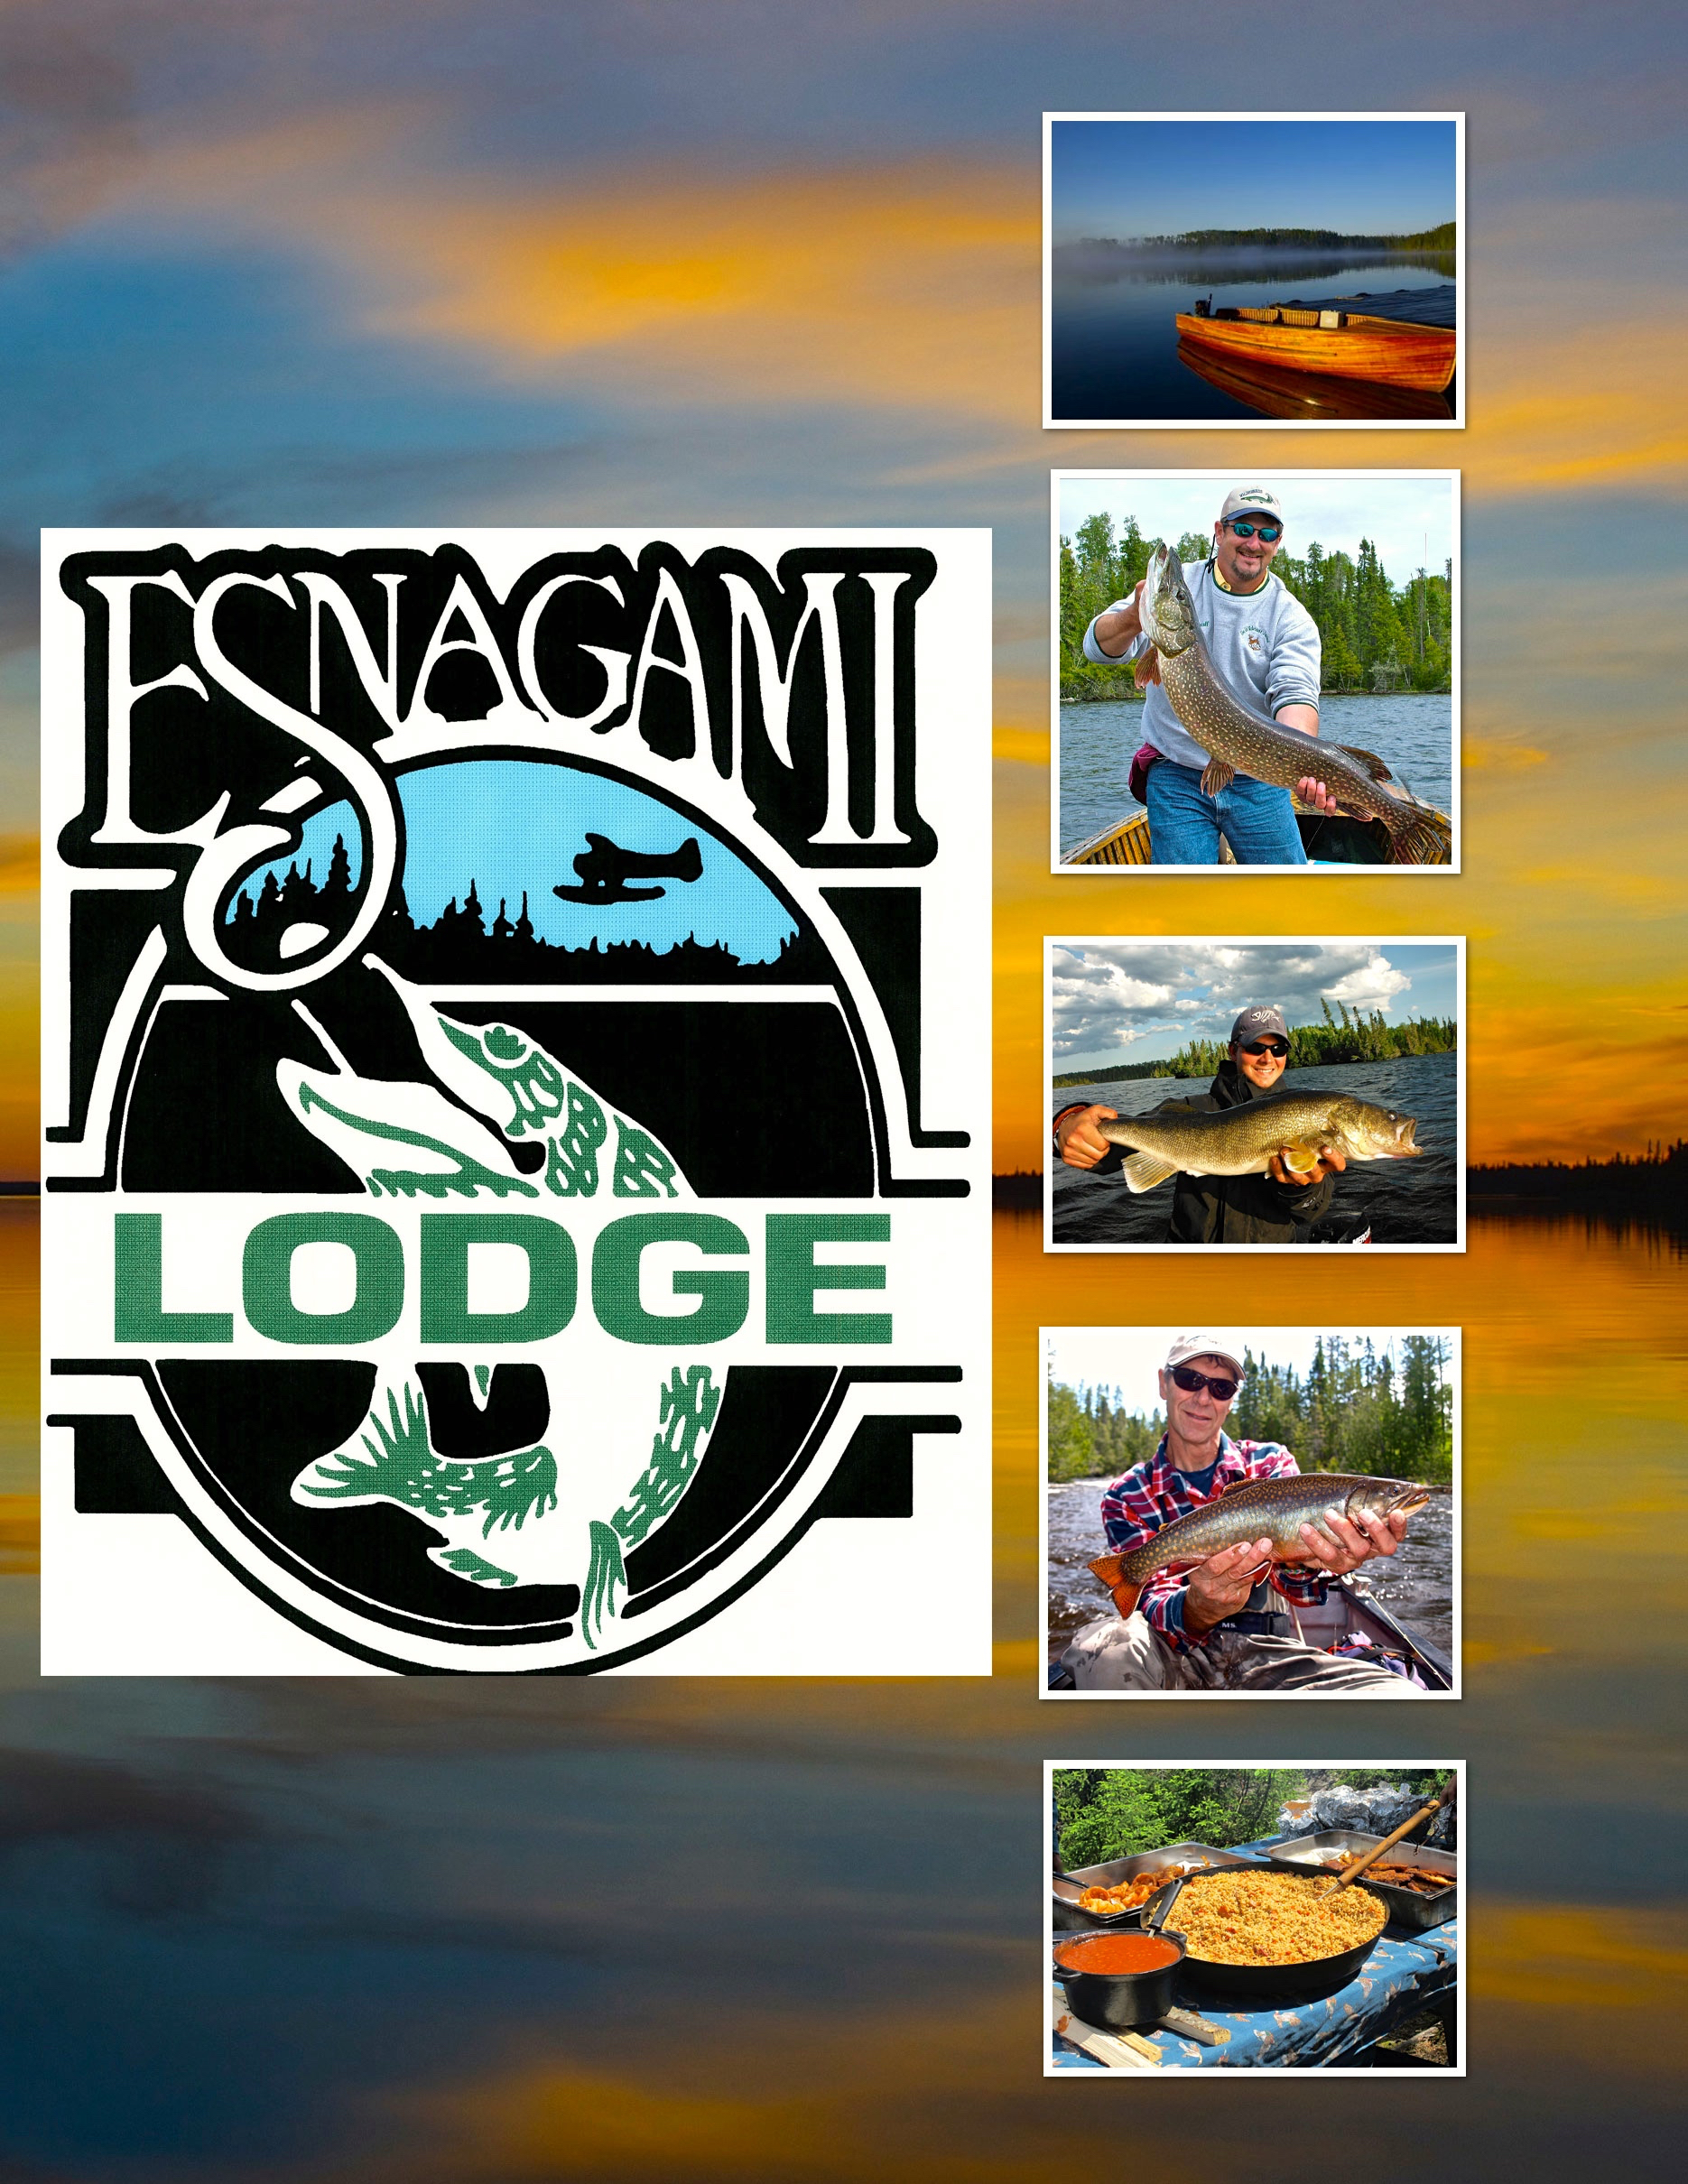 Esnagami Lodge